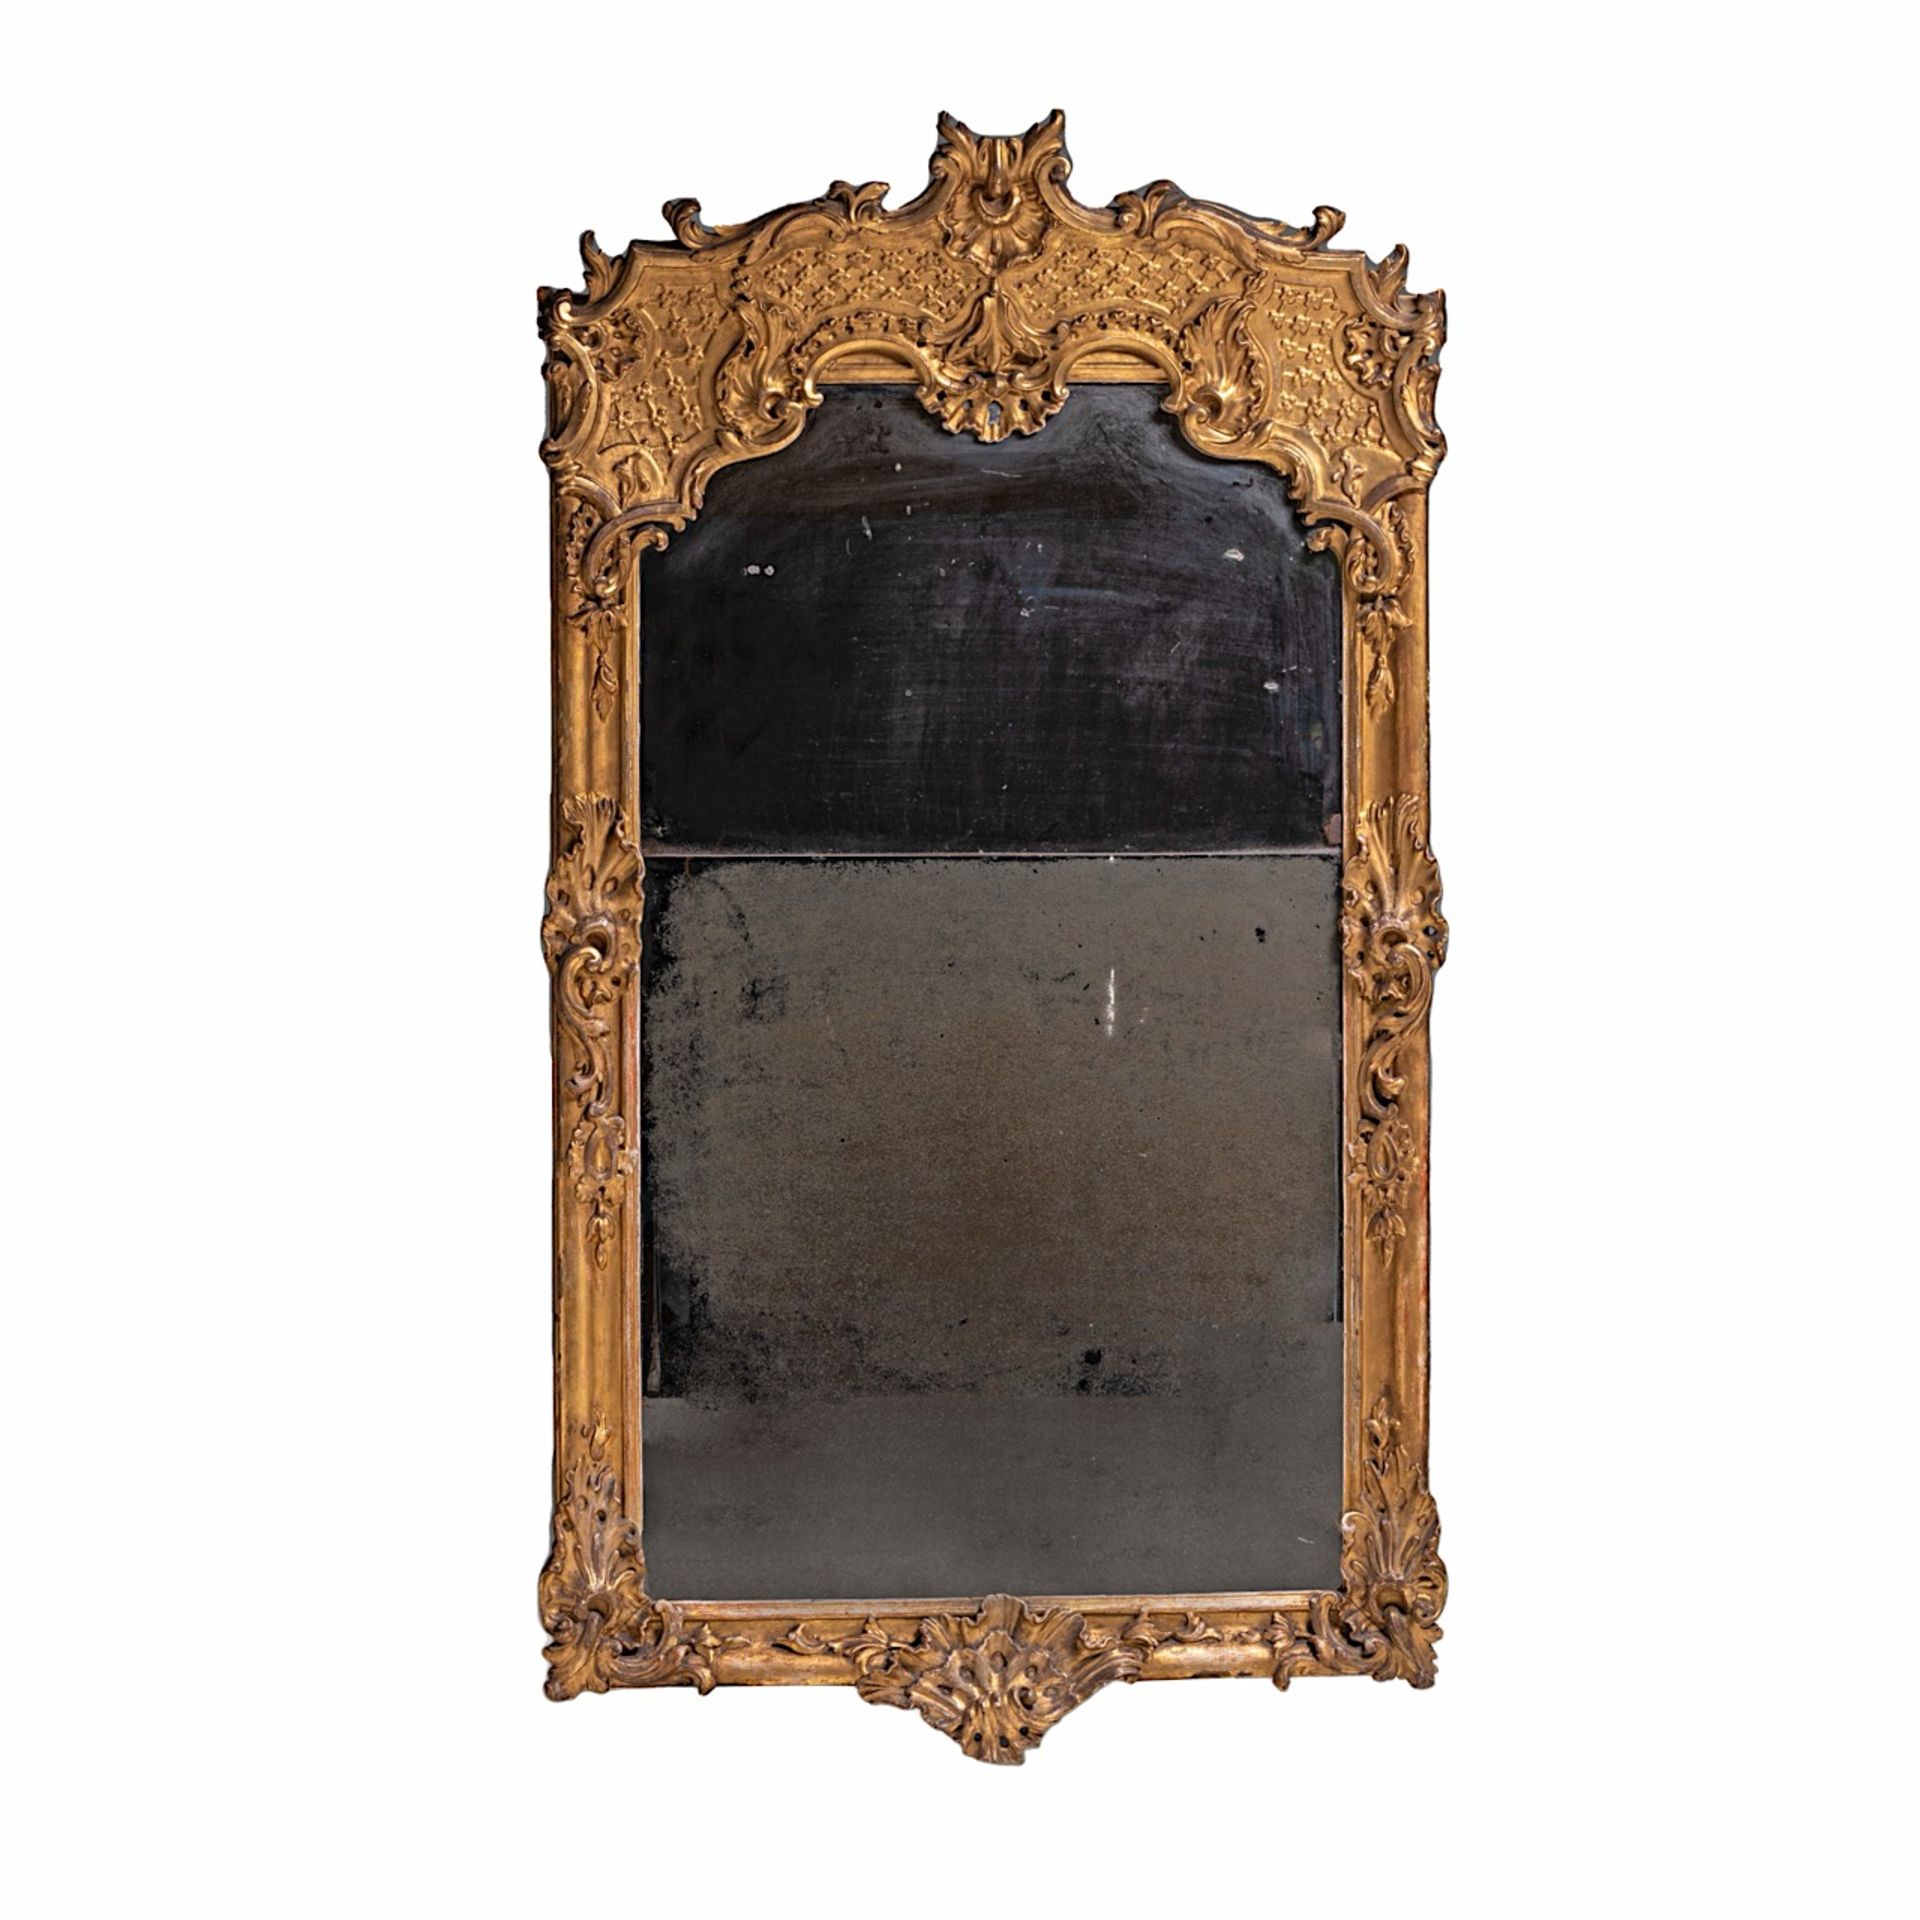 A Rococo giltwood trumeau mirror, mid 18thC 179 x 97 cm. (70.4 x 38.1 in.) - Bild 2 aus 3